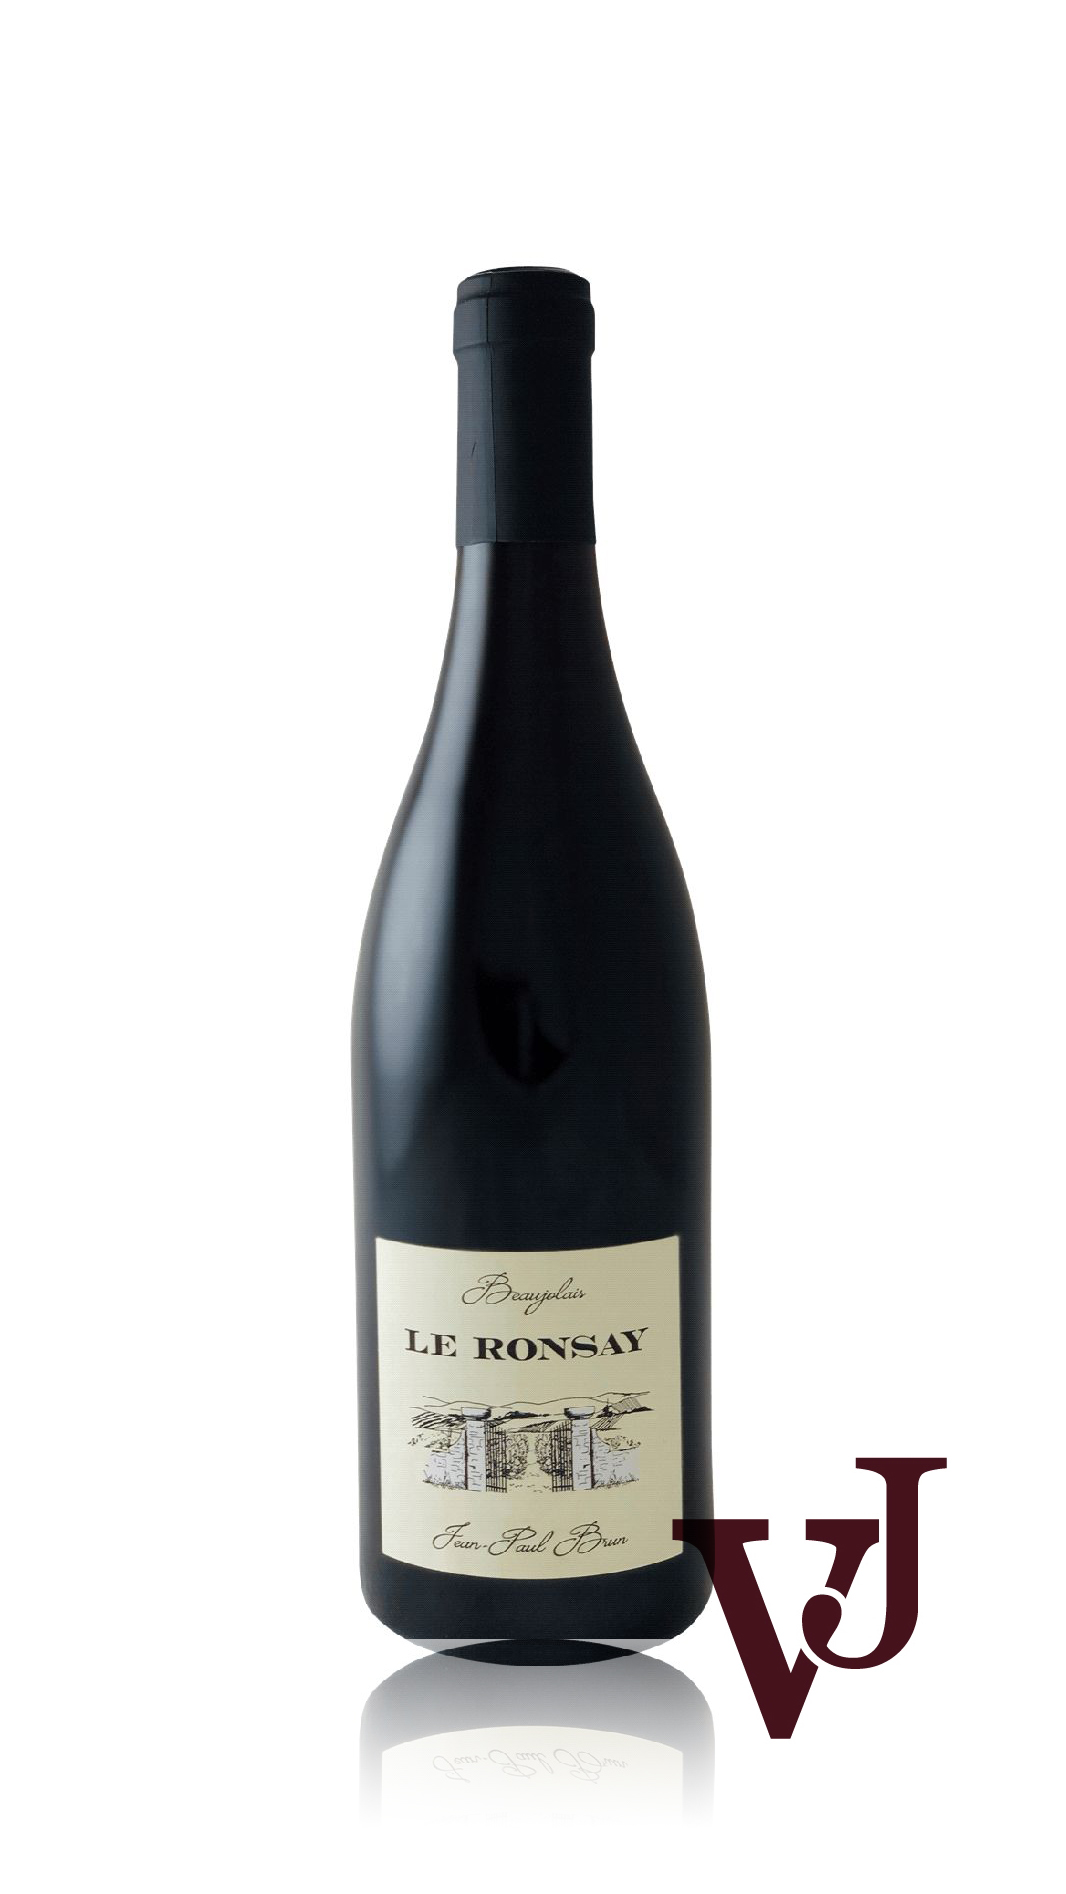 Rött Vin - Jean-Paul Brun Le Ronsay artikel nummer 7246801 från producenten Terres Dorées från området Frankrike